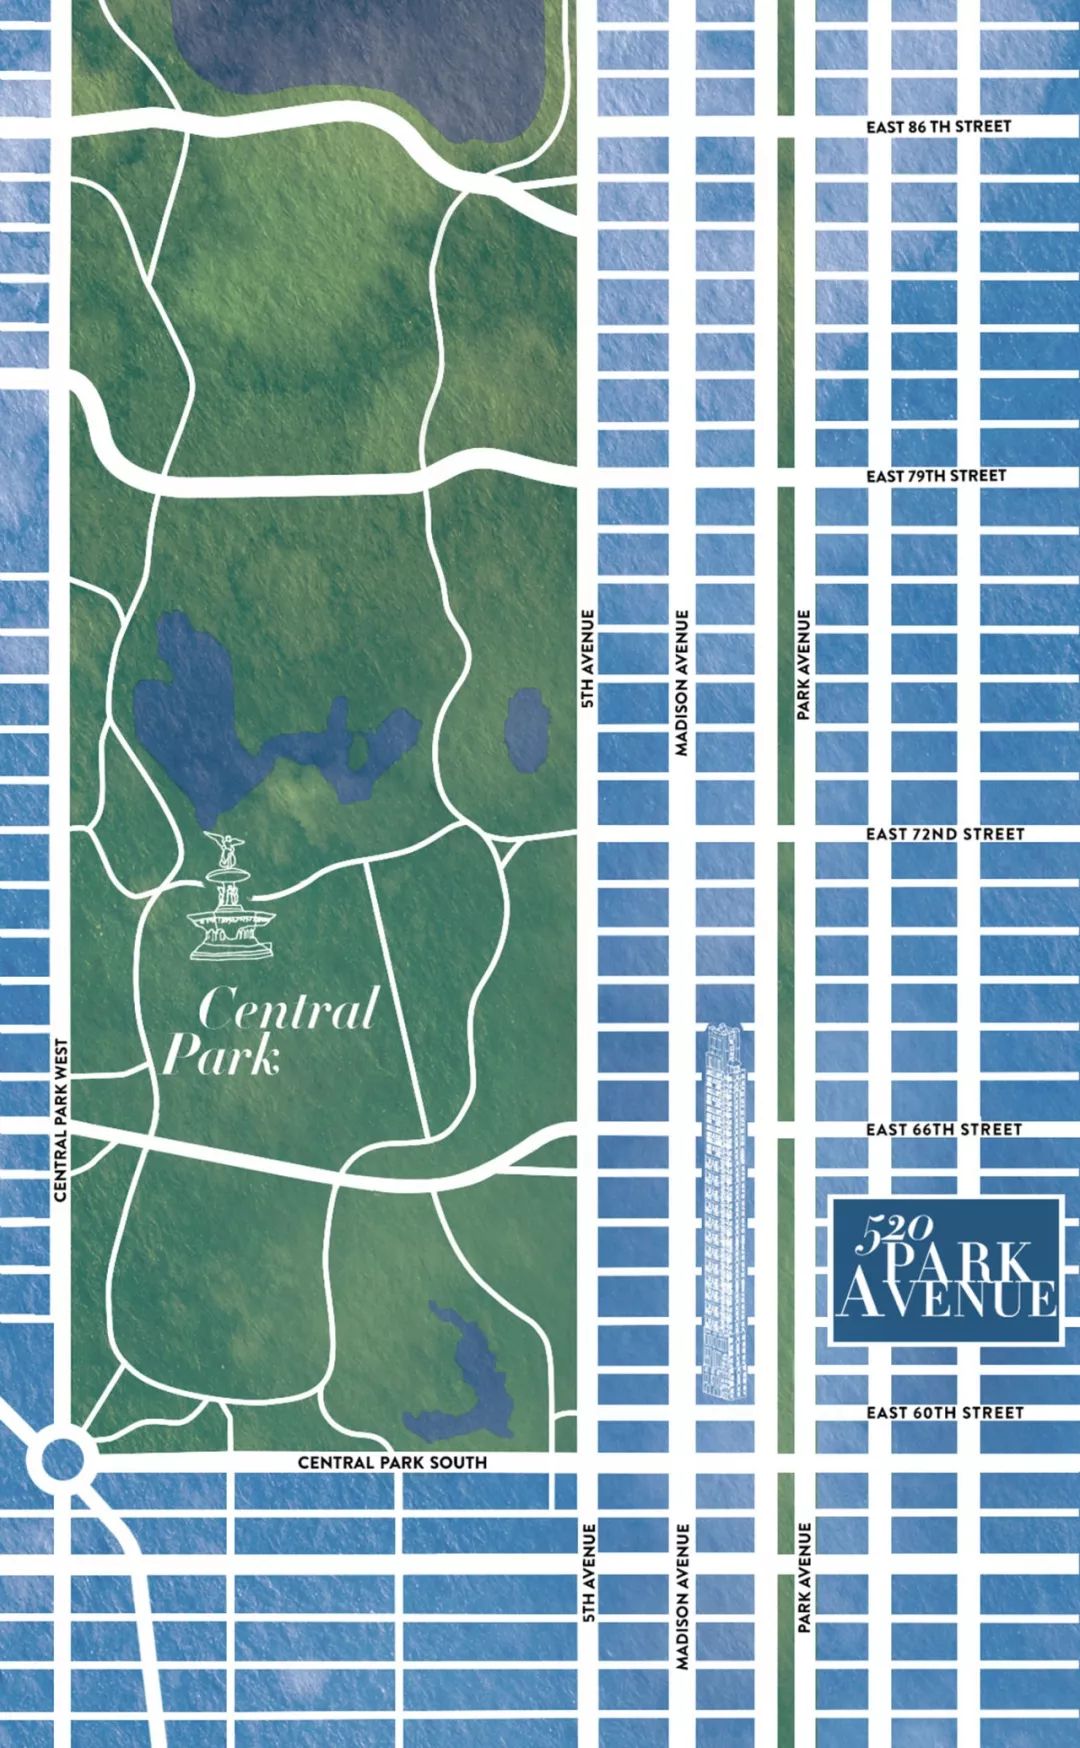 520 Park Avenue 公园大道——上东区的老钱新贵 住得更高 看的更远